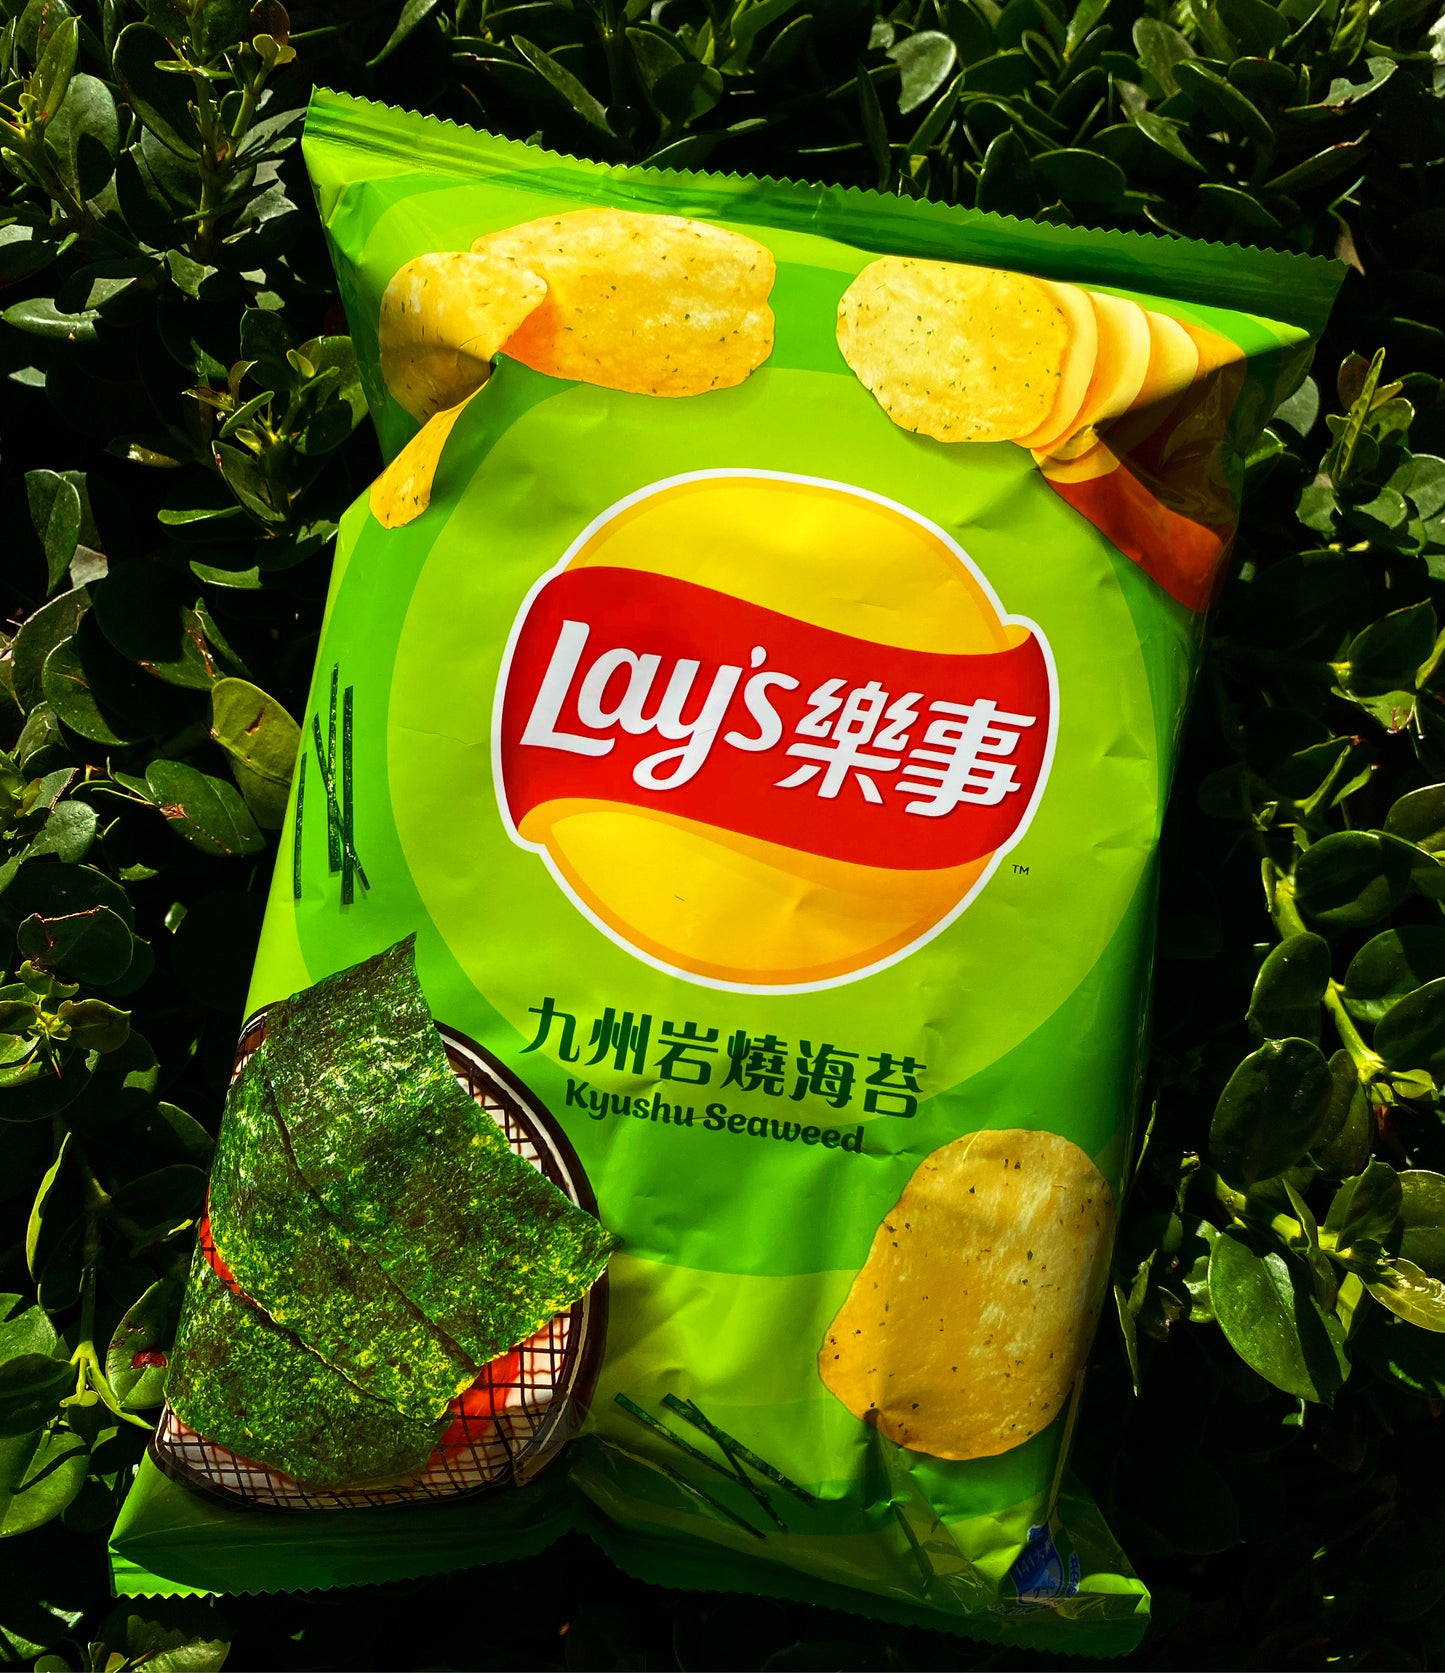 Lays Kyushu Seaweed (Taiwan)